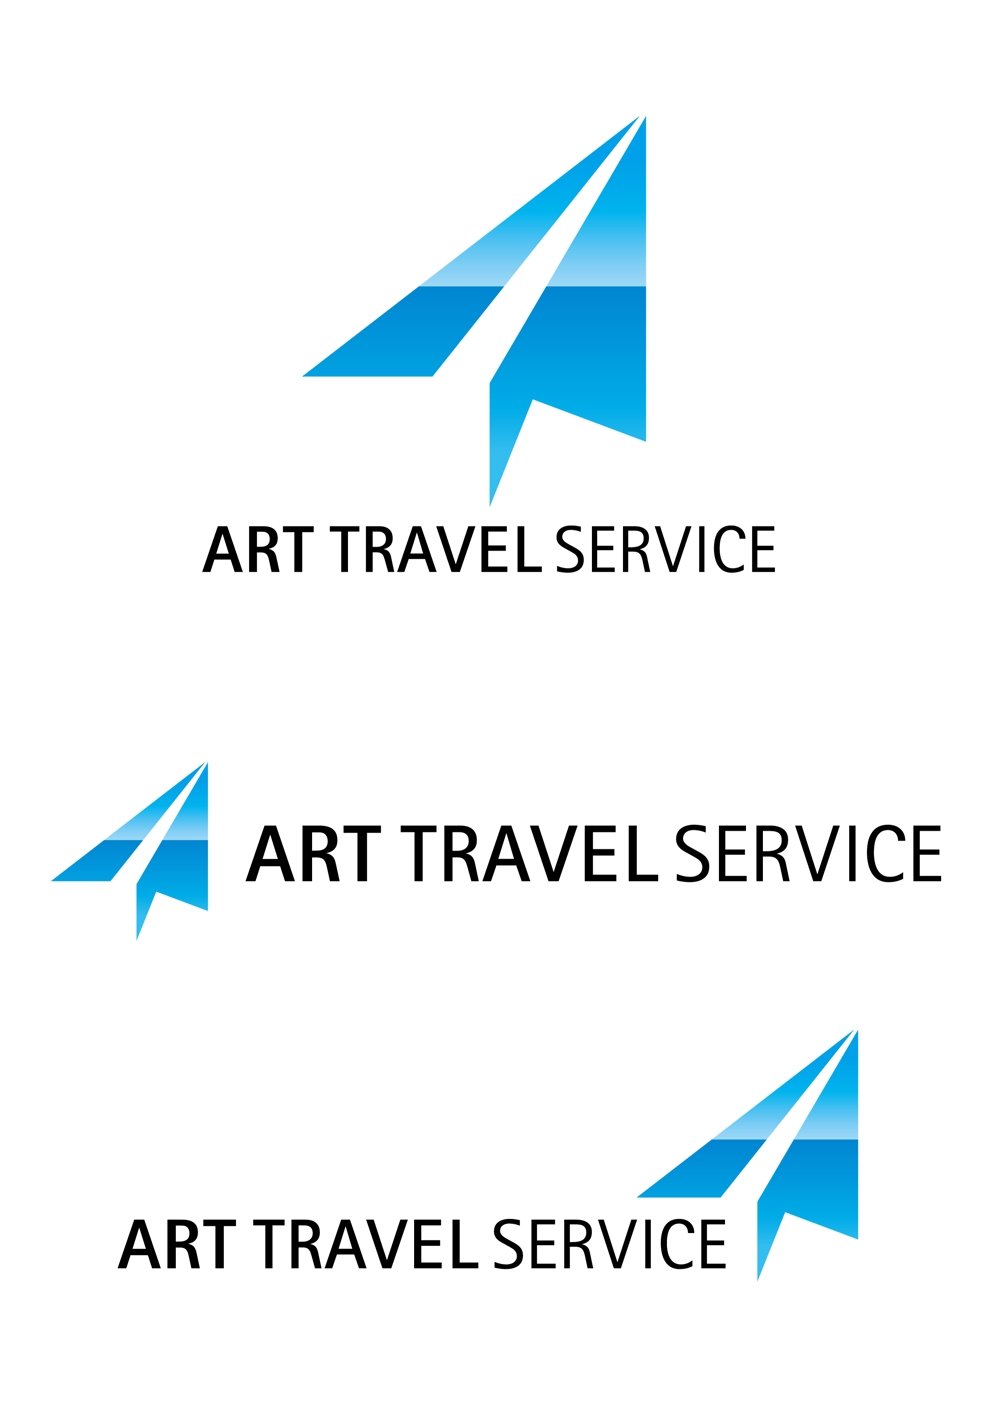 旅行会社のロゴ製作をお願いいたします。